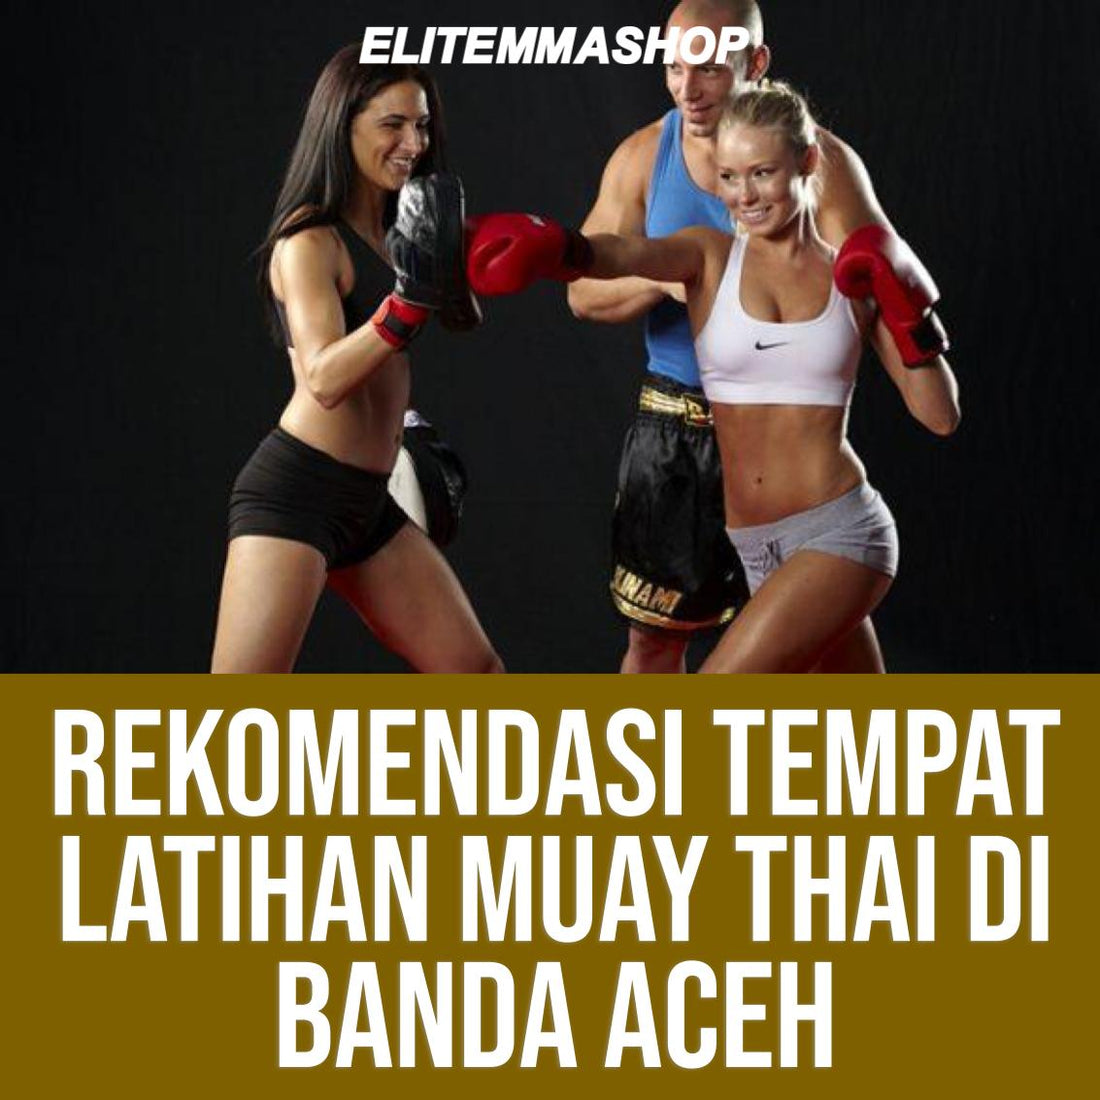 Rekomendasi Tempat Latihan Muay Thai di Banda Aceh